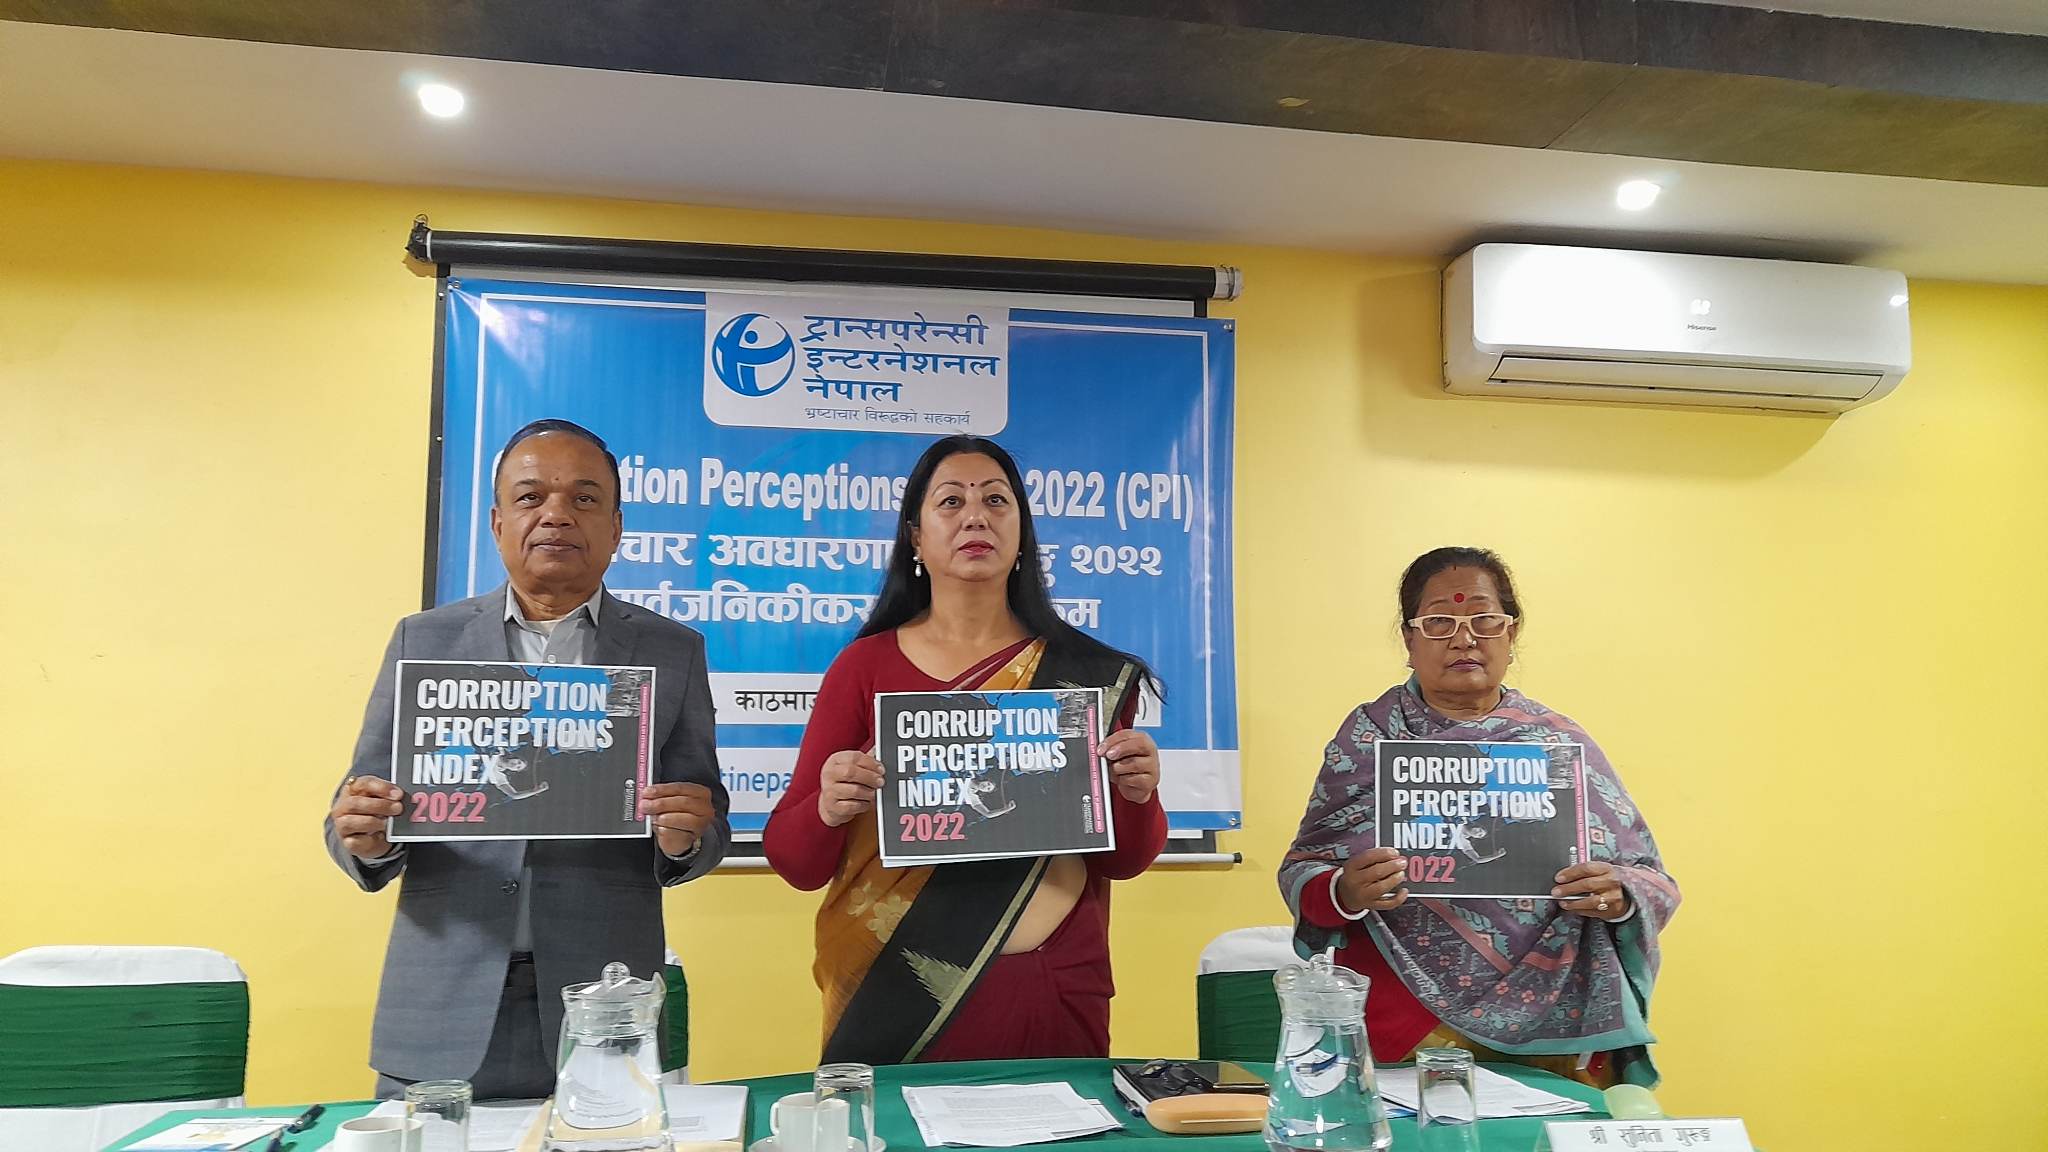 ट्रान्सपरेन्सी इन्टरनेशनलको रिपोर्ट : नेपाल भ्रष्टाचार व्याप्त मुलुकको श्रेणीमा कायमै